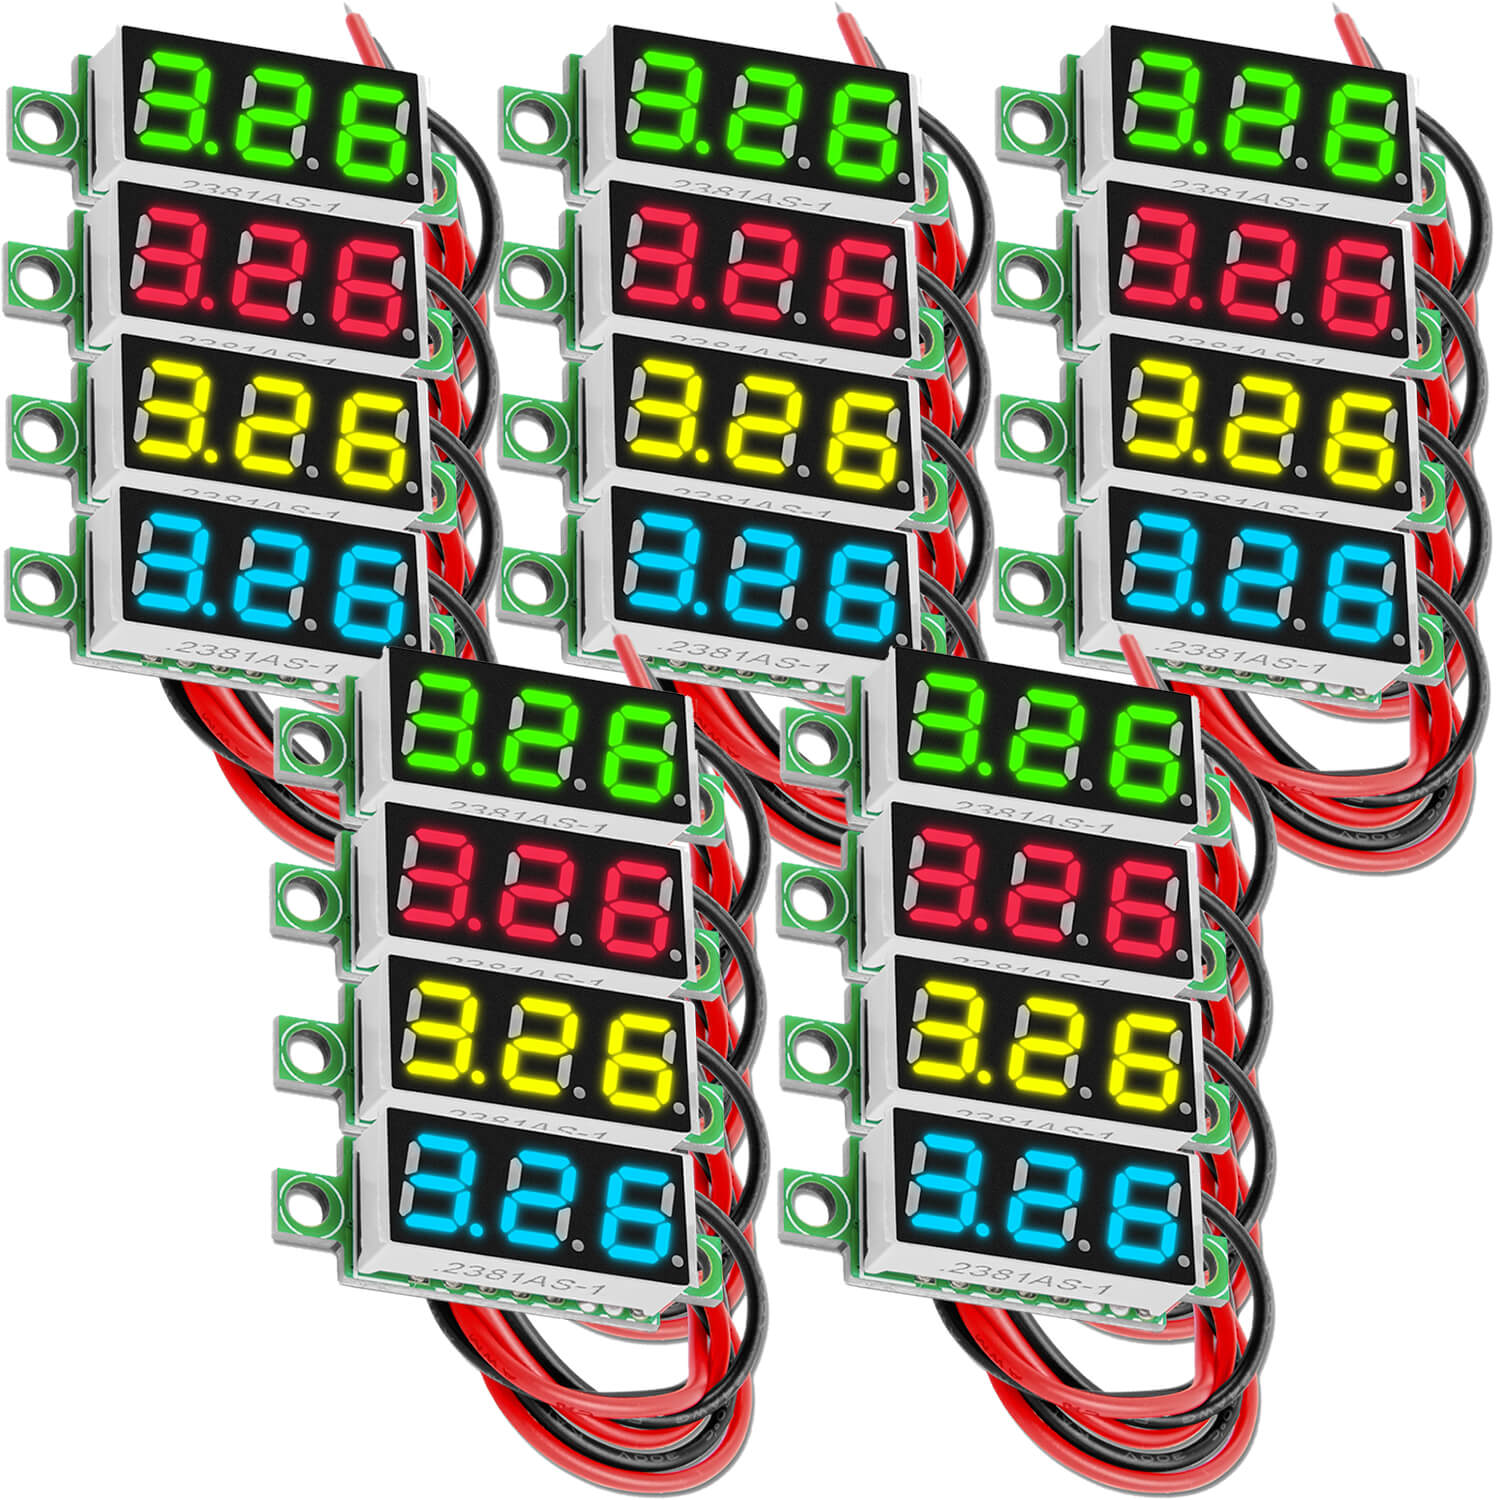 0,28 Zoll Mini Digital Voltmeter Spannungsmesser mit 7-Segment Anzeige